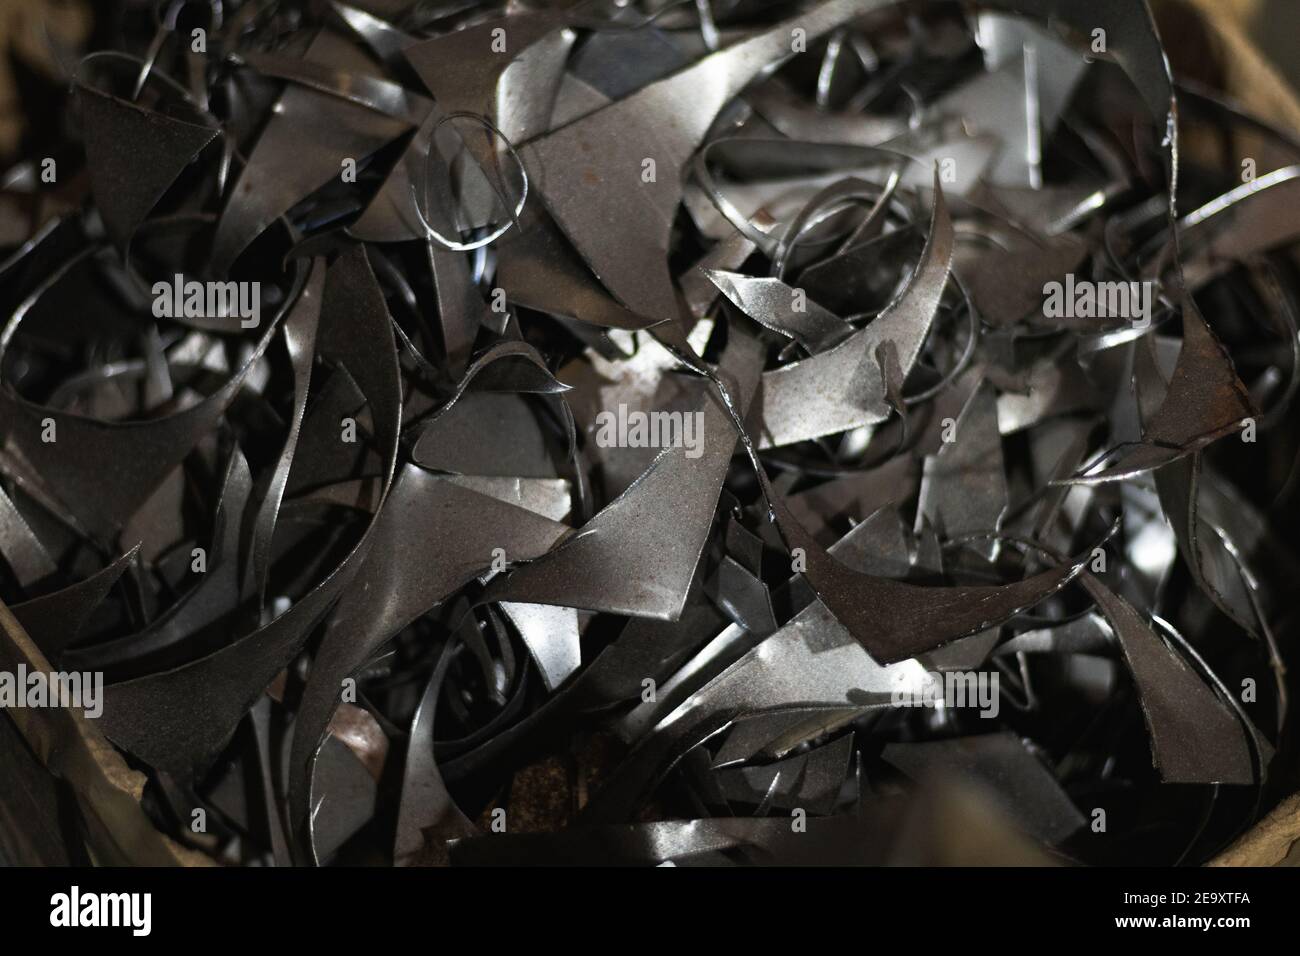 Dall'alto della pila di trucioli di alluminio rimasti dopo la lavorazione prodotti metallici in fucina Foto Stock